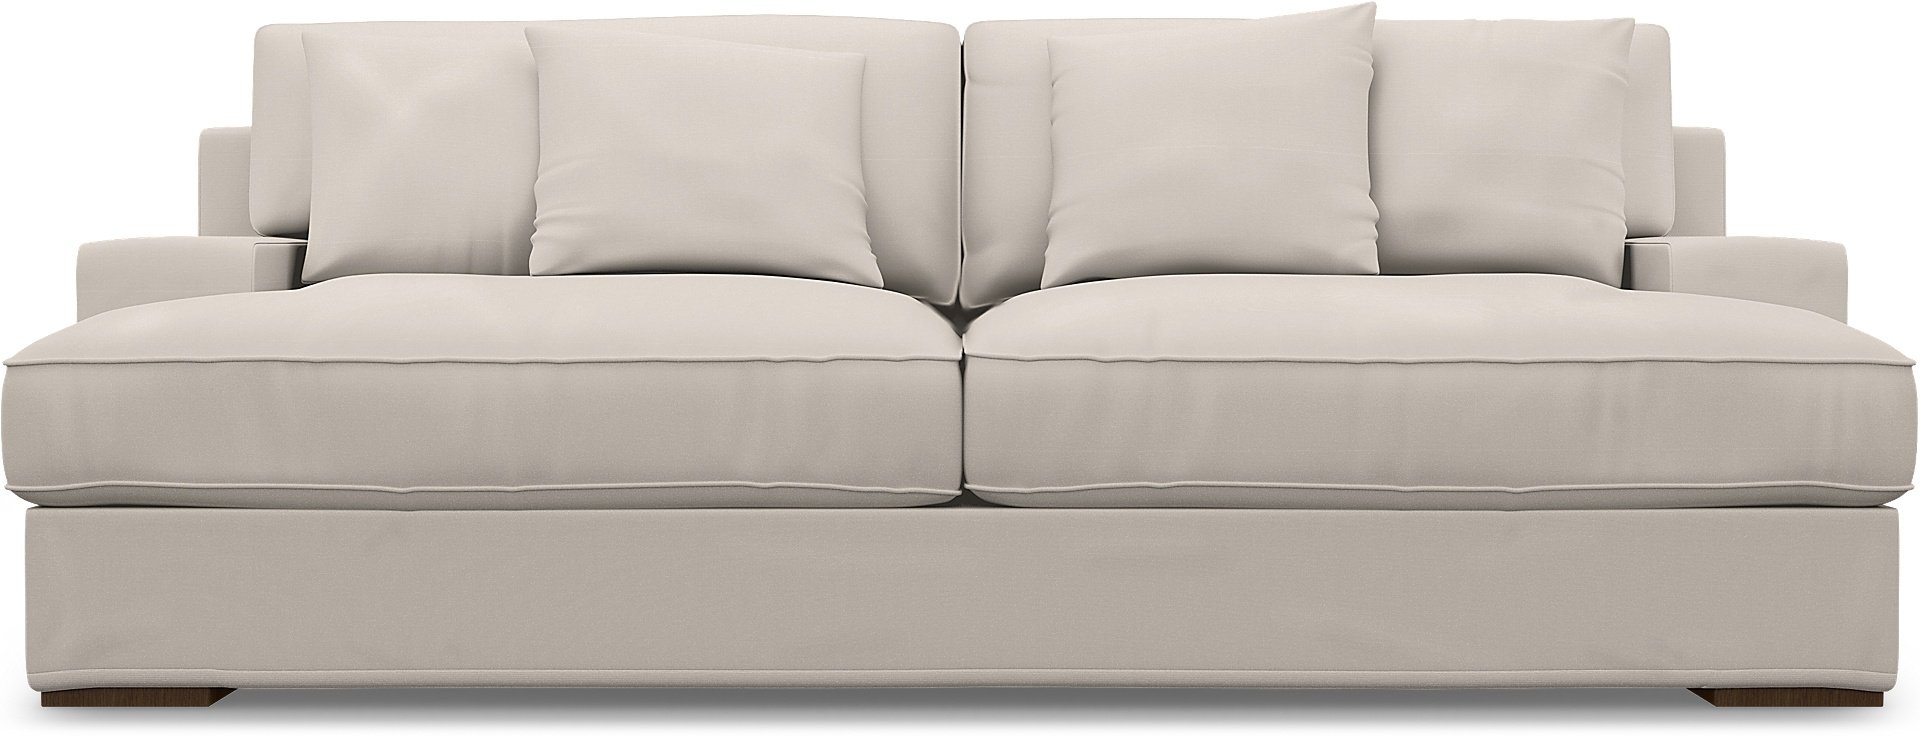 IKEA - Goteborg 3 Seater Sofa Cover, Soft White, Cotton - Bemz